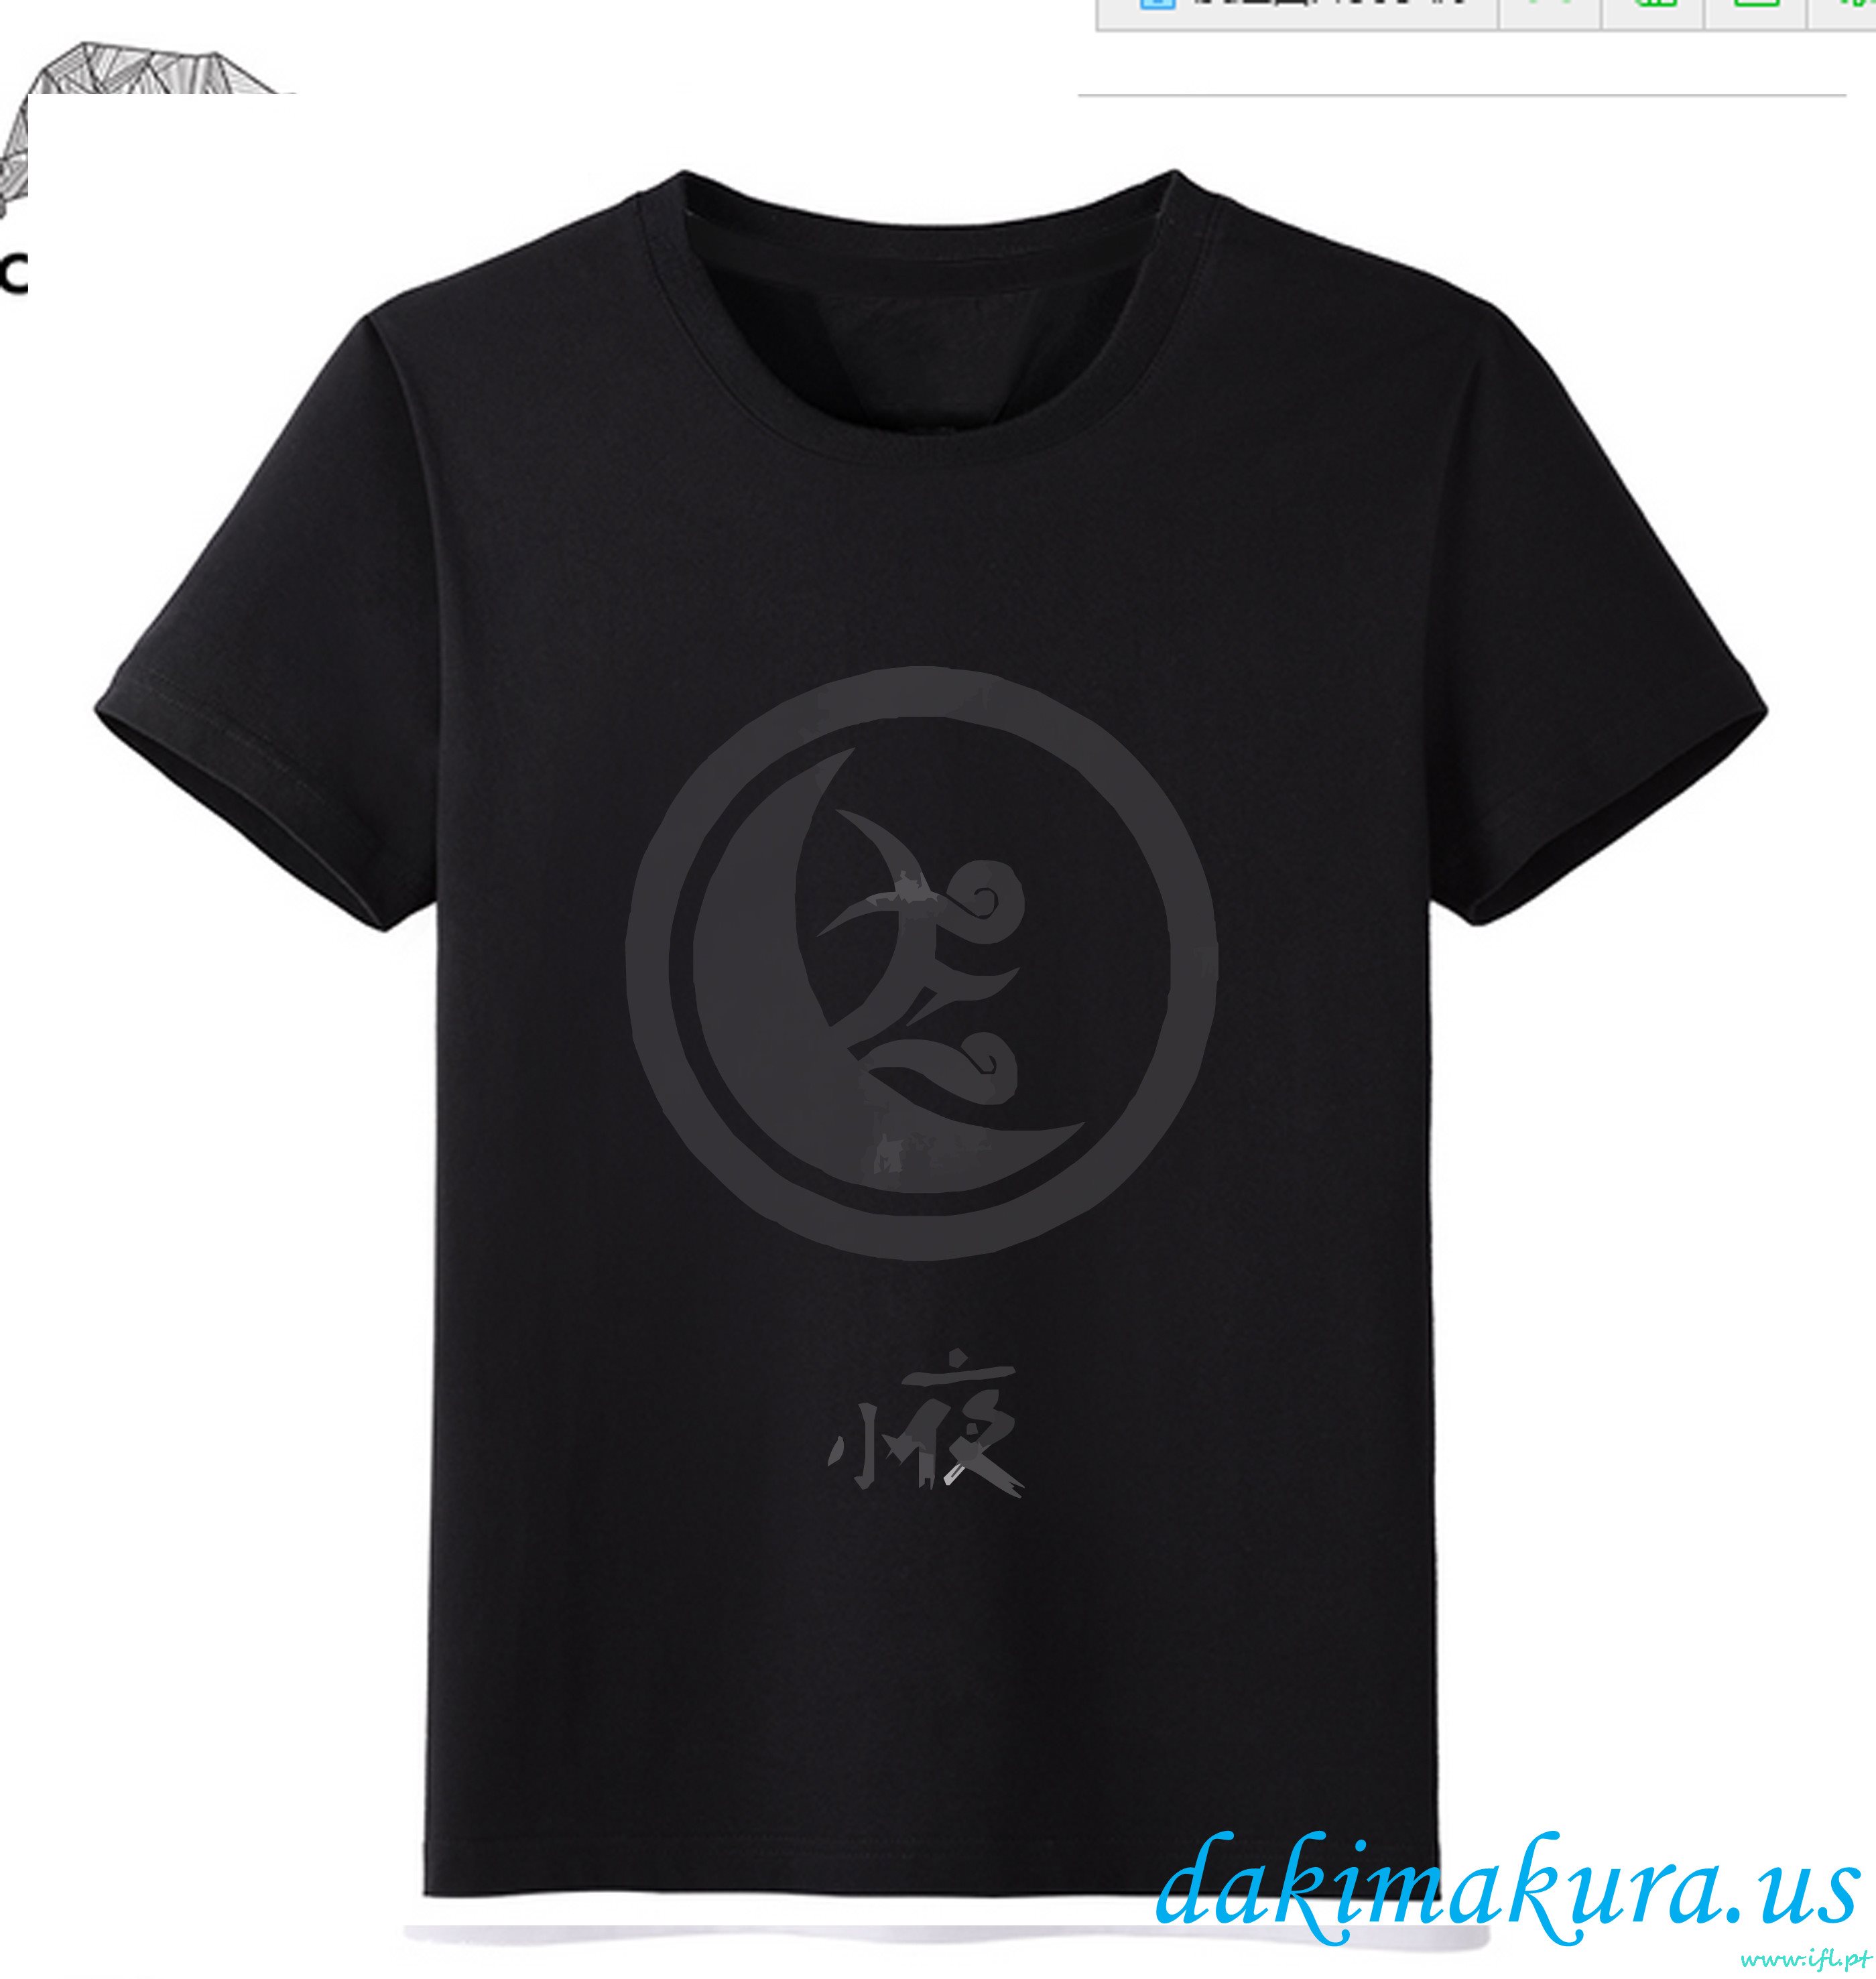 Barato Preto - T-shirt Em Linha Da Moda Do Anime Dos Homens Do Ranbu De Touken Da Fábrica Da Porcelana